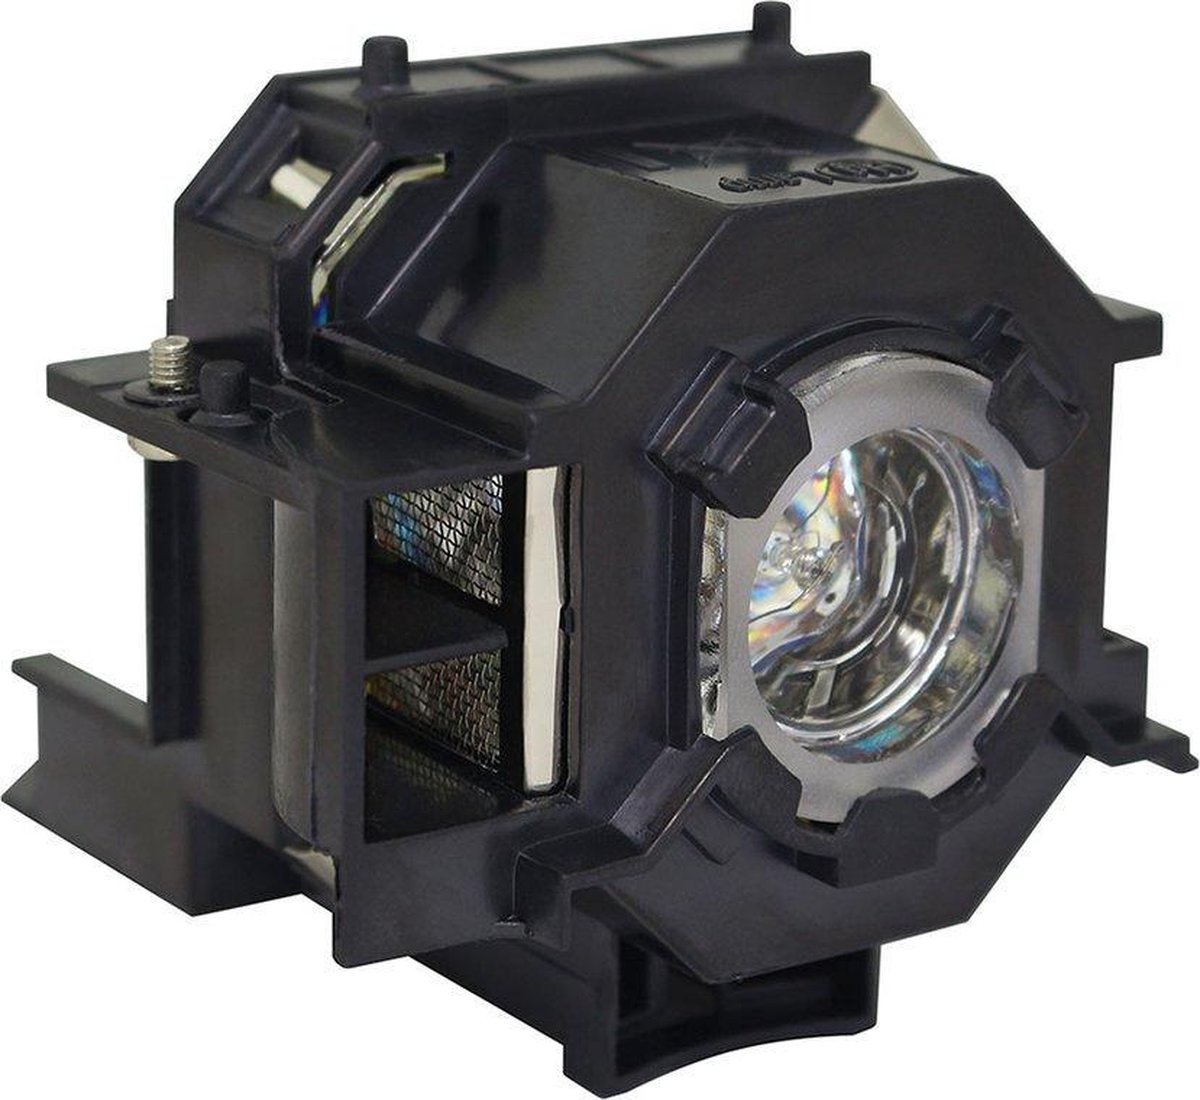 Beamerlamp geschikt voor de EPSON EB-X62 beamer, lamp code LP41 / V13H010L41. Bevat originele P-VIP lamp, prestaties gelijk aan origineel.